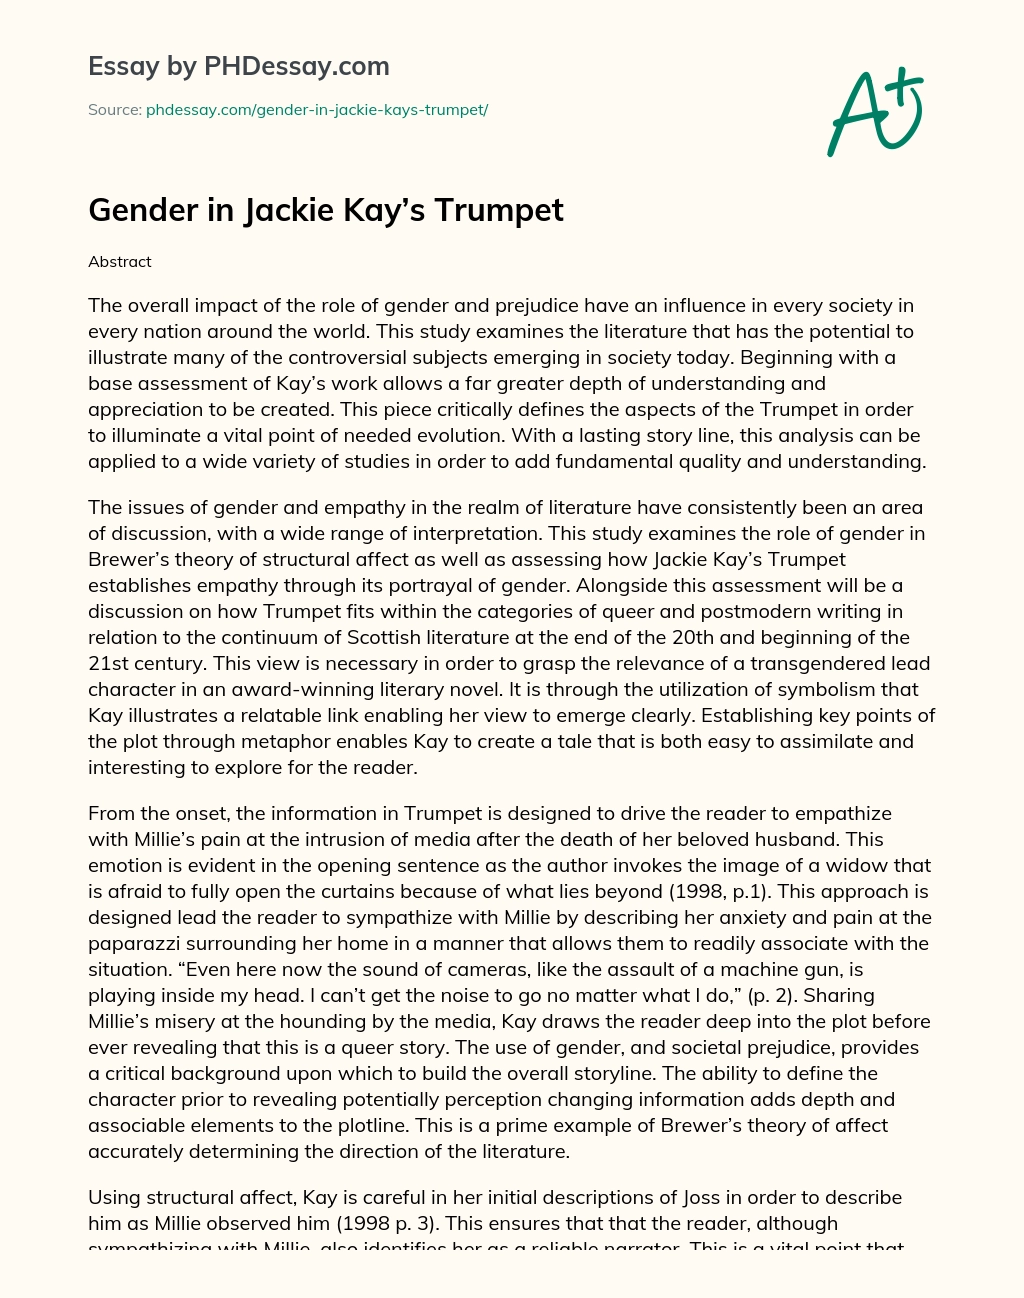 Gender in Jackie Kay’s Trumpet essay